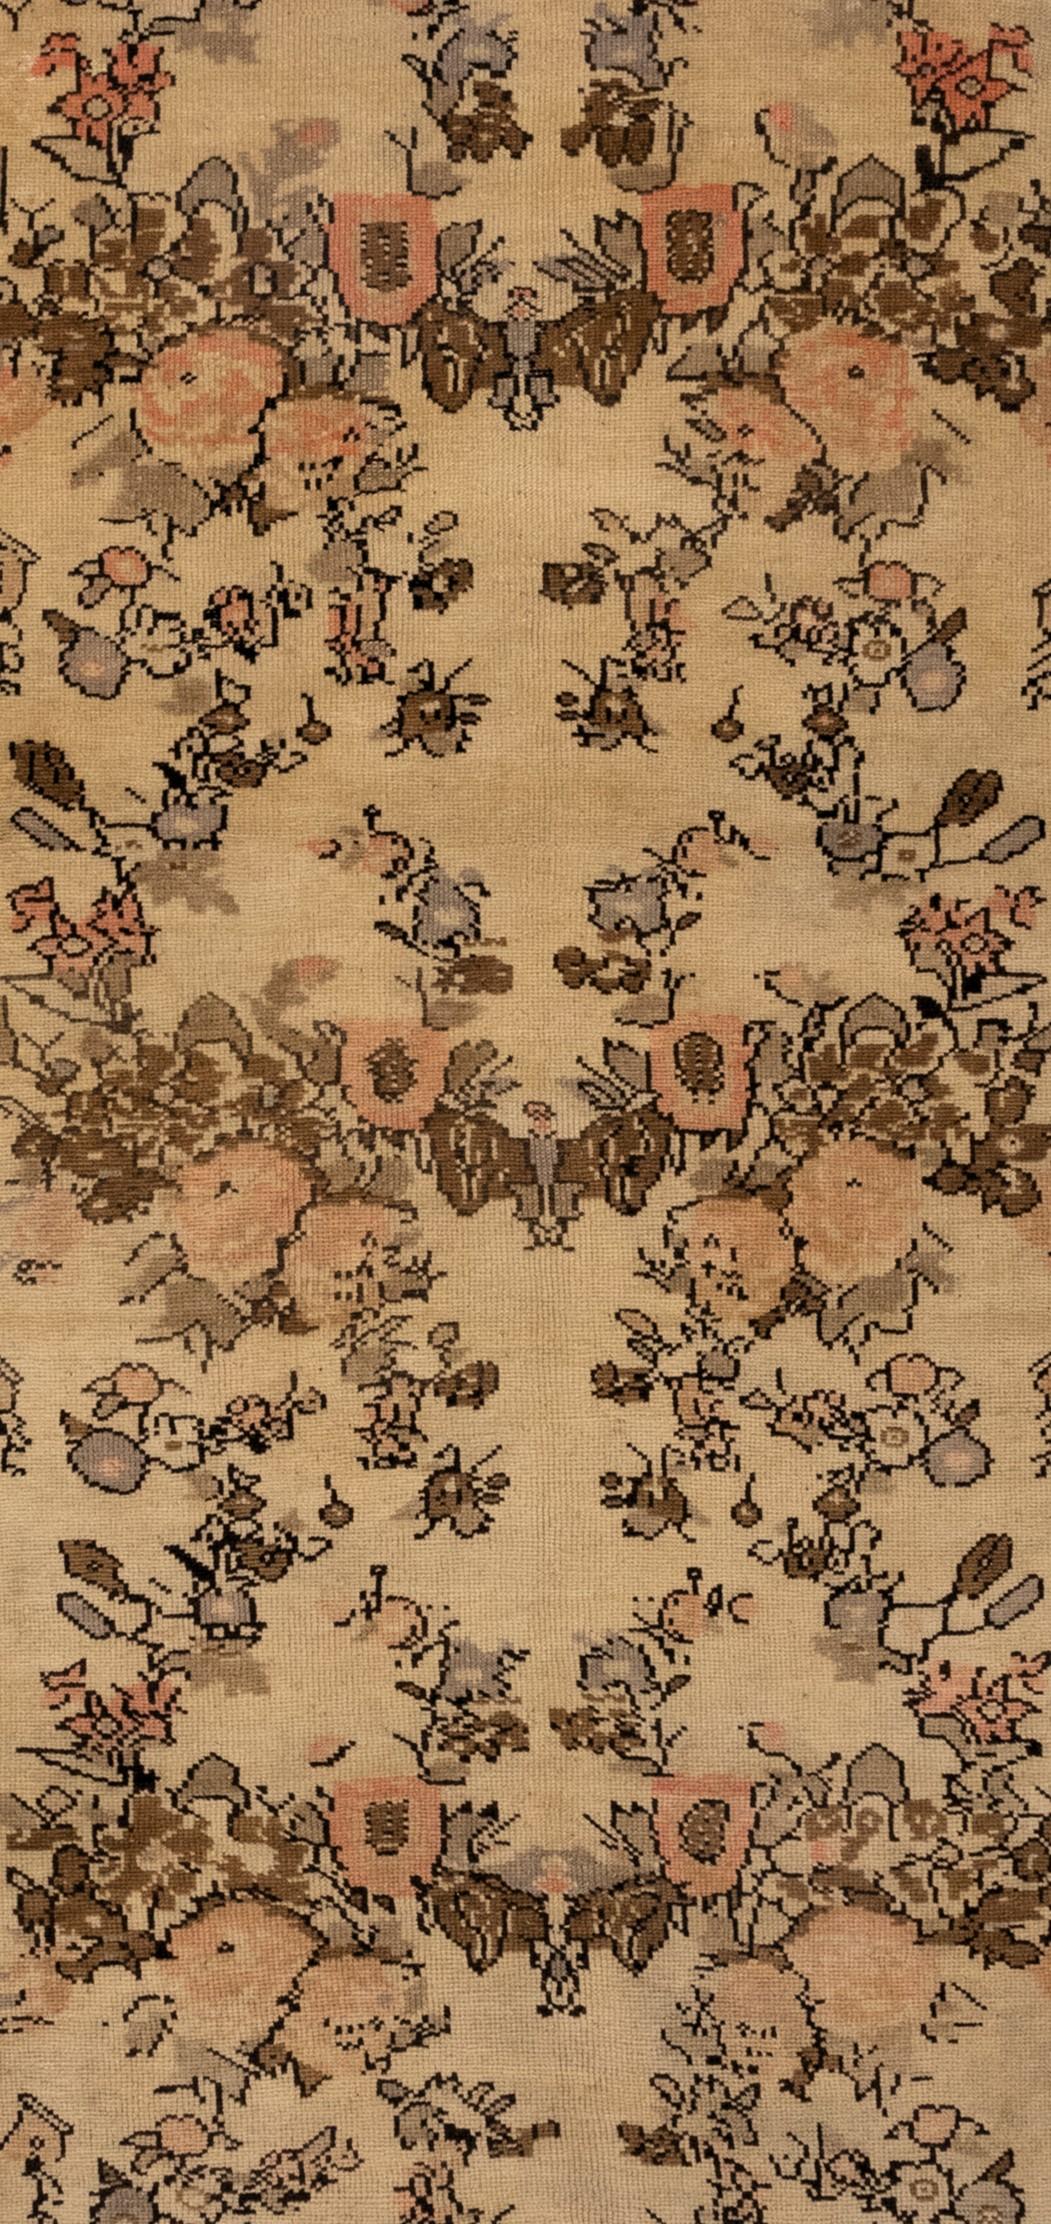 Dieser prächtige türkische Ushak-Teppich aus den 1920er Jahren zeichnet sich durch die floralen Gul Farang-Muster aus, die ihn zu einem echten Unikat machen. Der elfenbeinfarbene Hintergrund dient als perfekte Leinwand für das auffällige Design, das